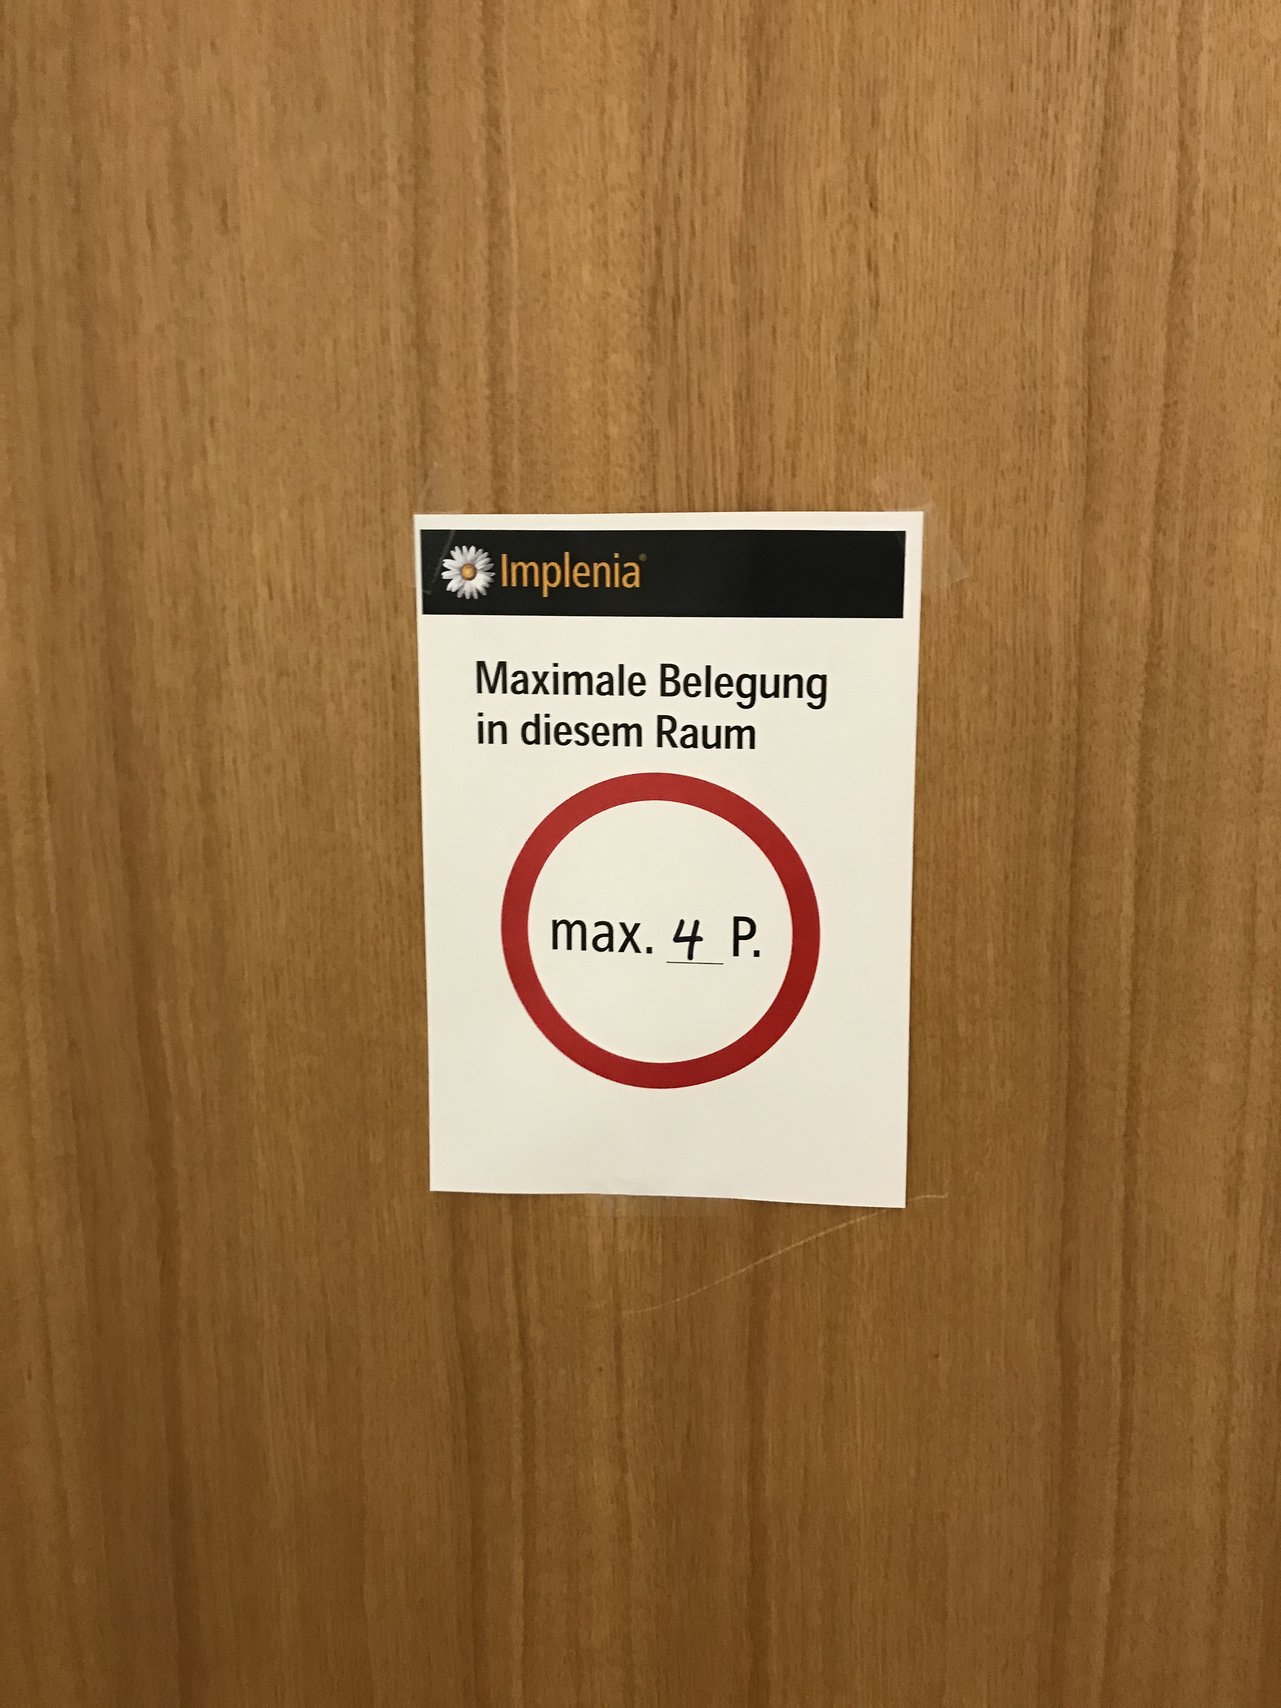 Salas de reunião: O número máximo de pessoas permitido é indicado nas portas das salas de reunião.